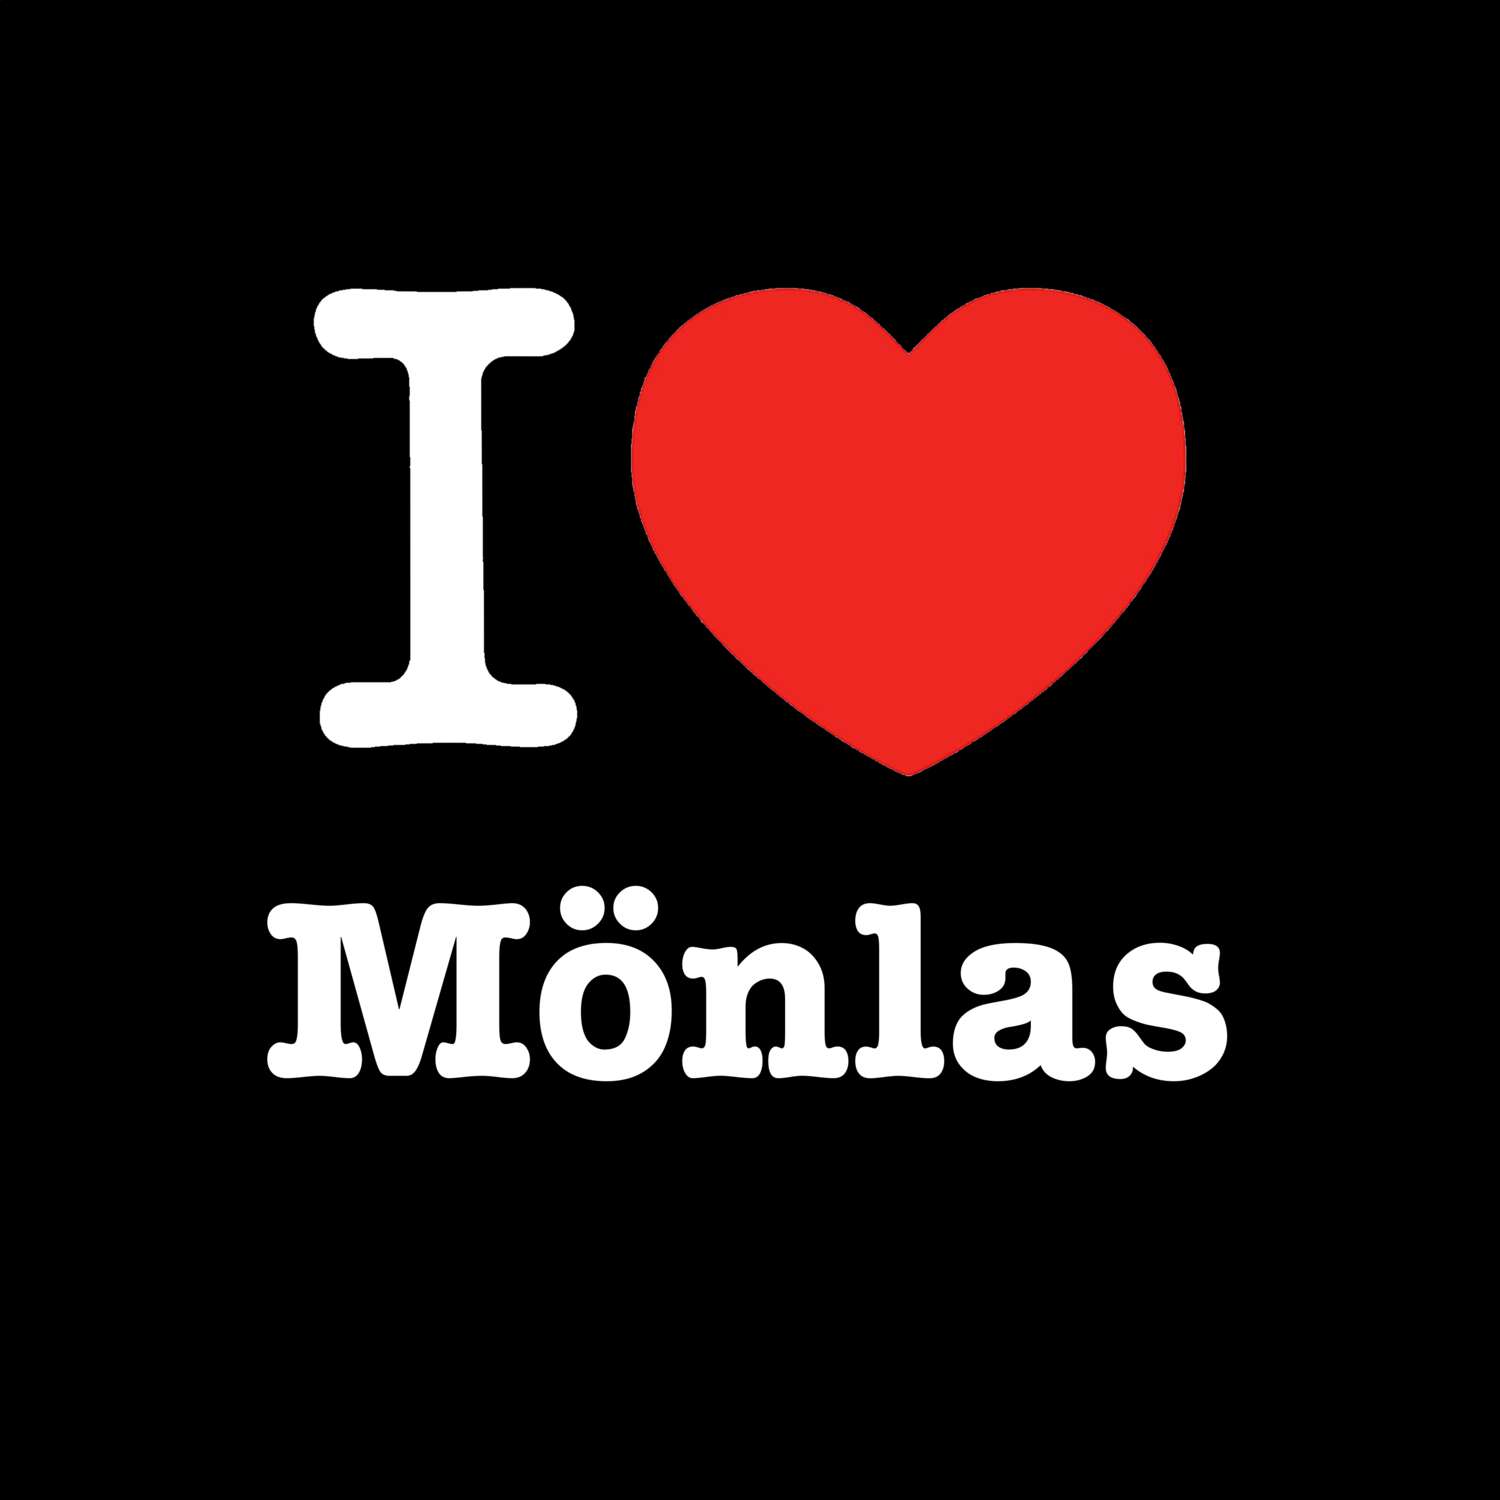 Mönlas T-Shirt »I love«